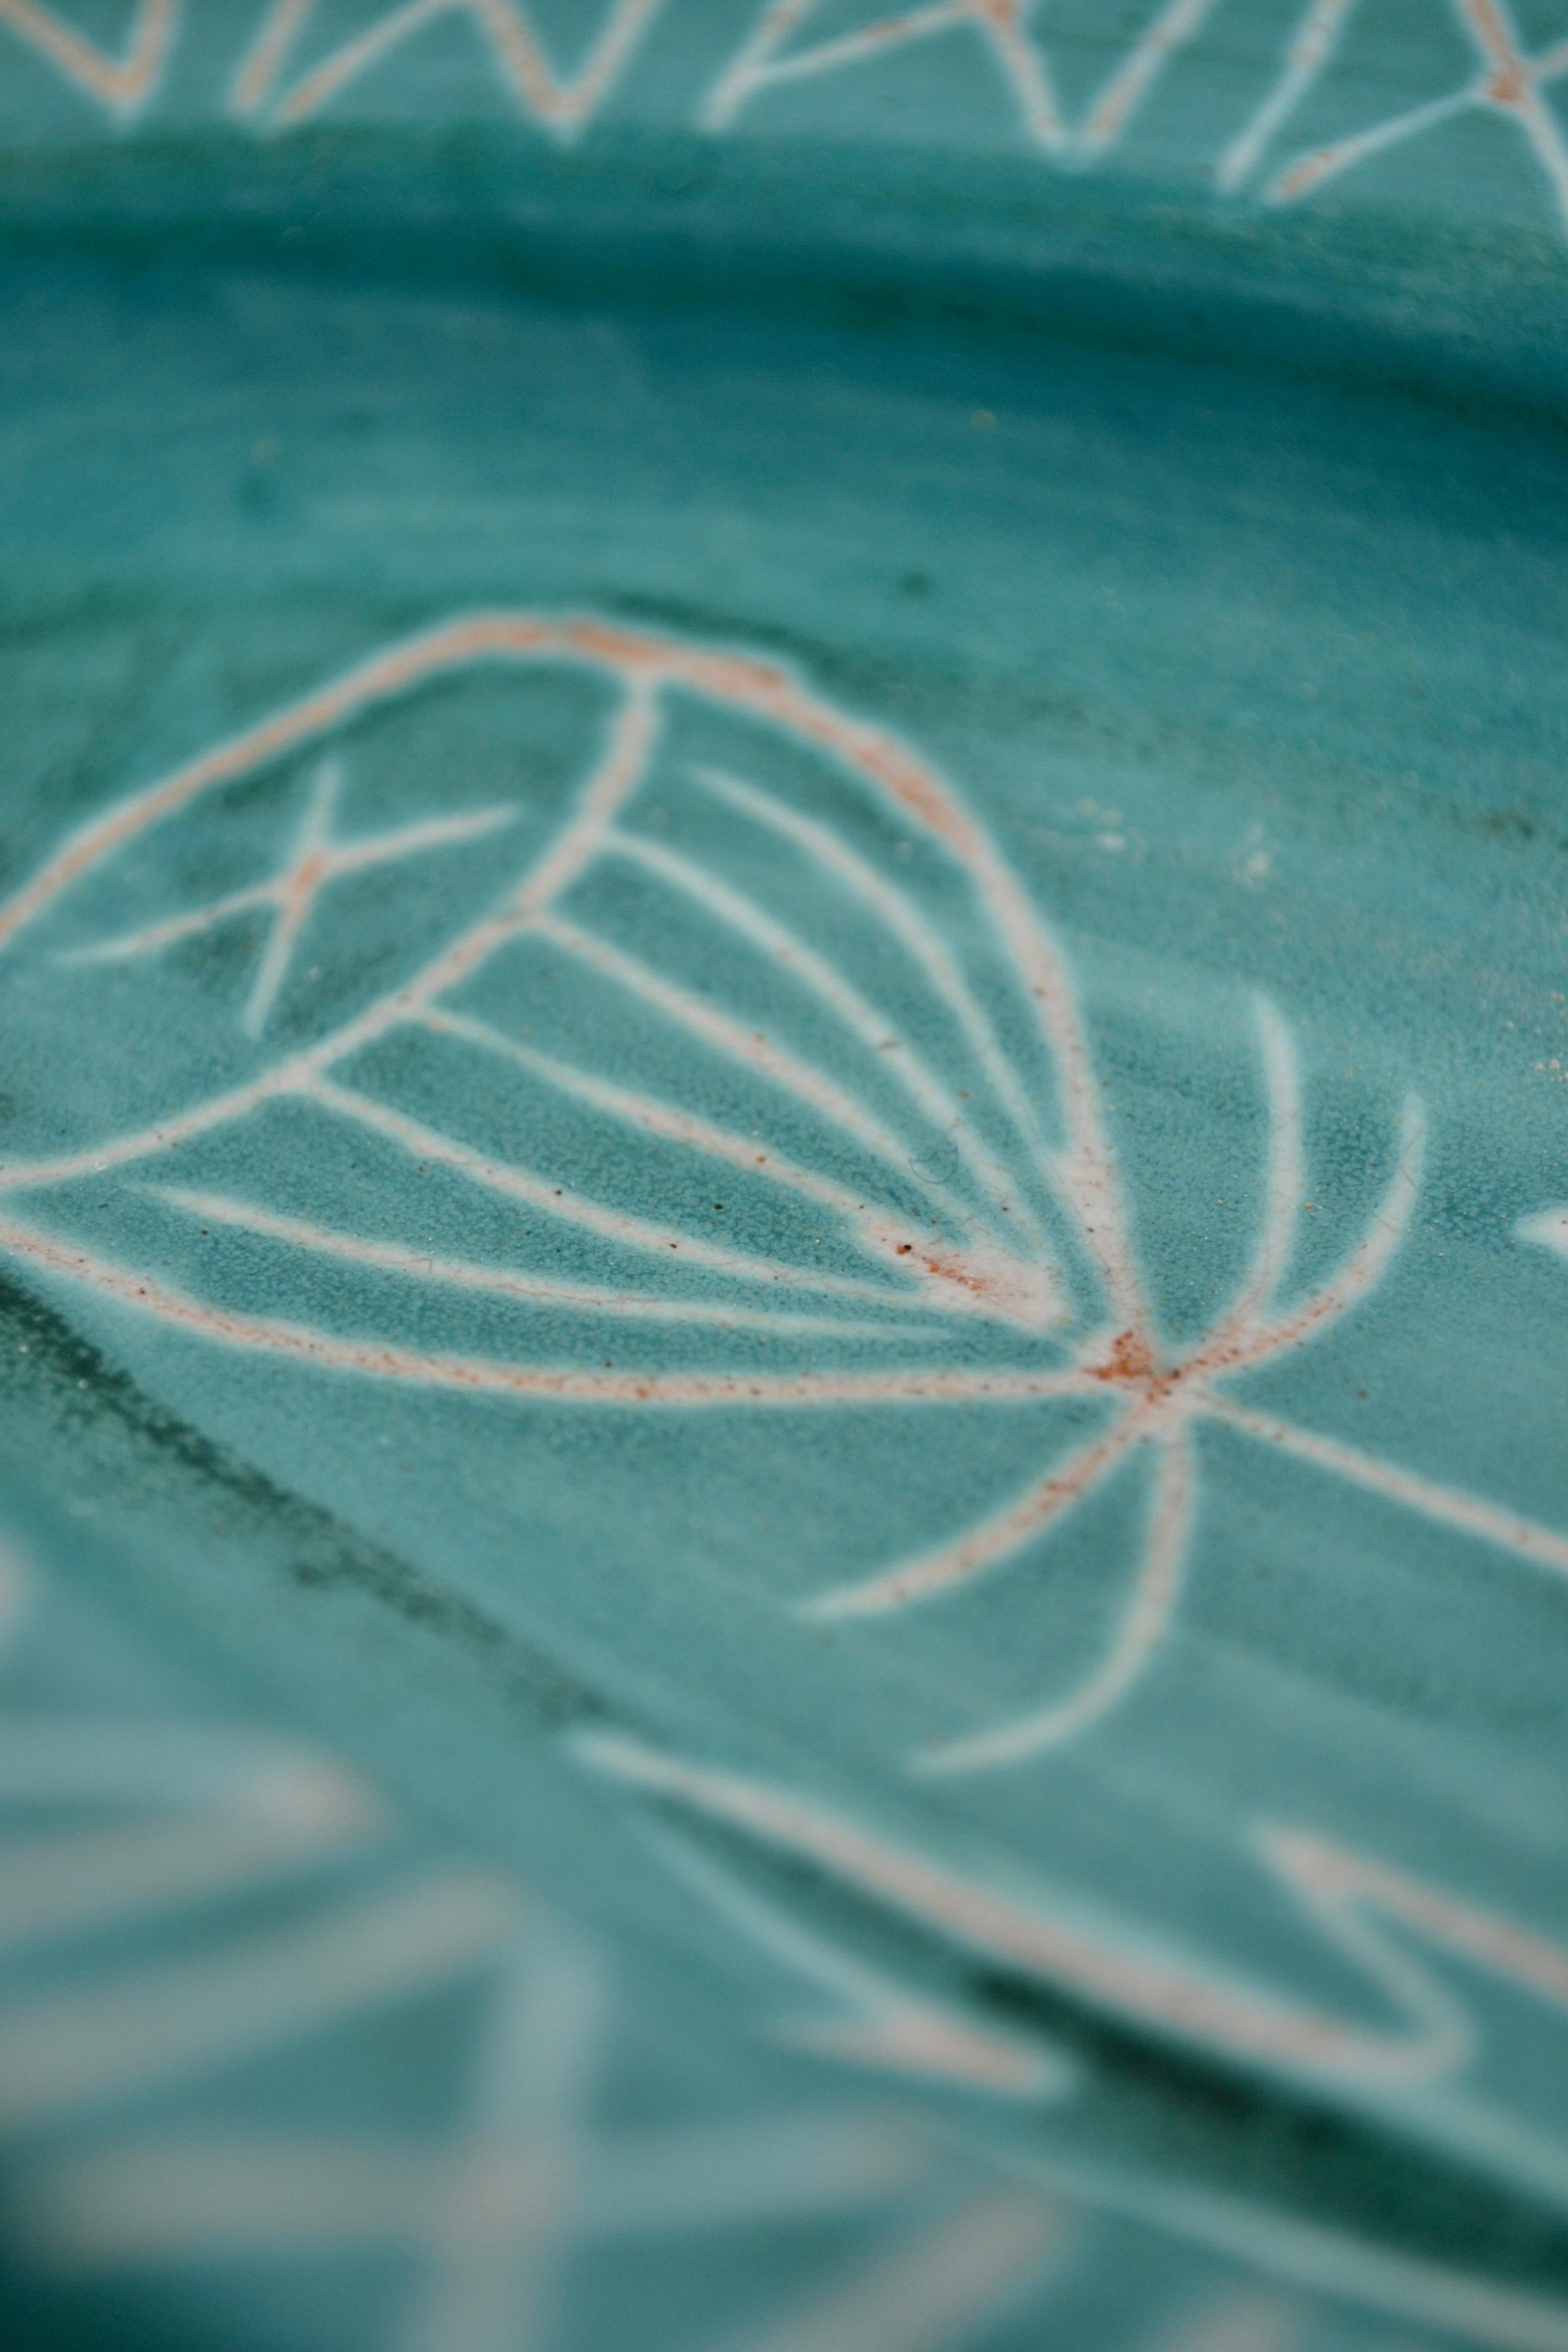 Magnifique plat ovale en céramique de Robert Picault, orné d'un motif de chardon, en parfait état. Les pièces personnelles de Picault portent sa signature complète jusqu'en 1962, tandis que les pièces industrielles sont marquées RP en vert foncé,